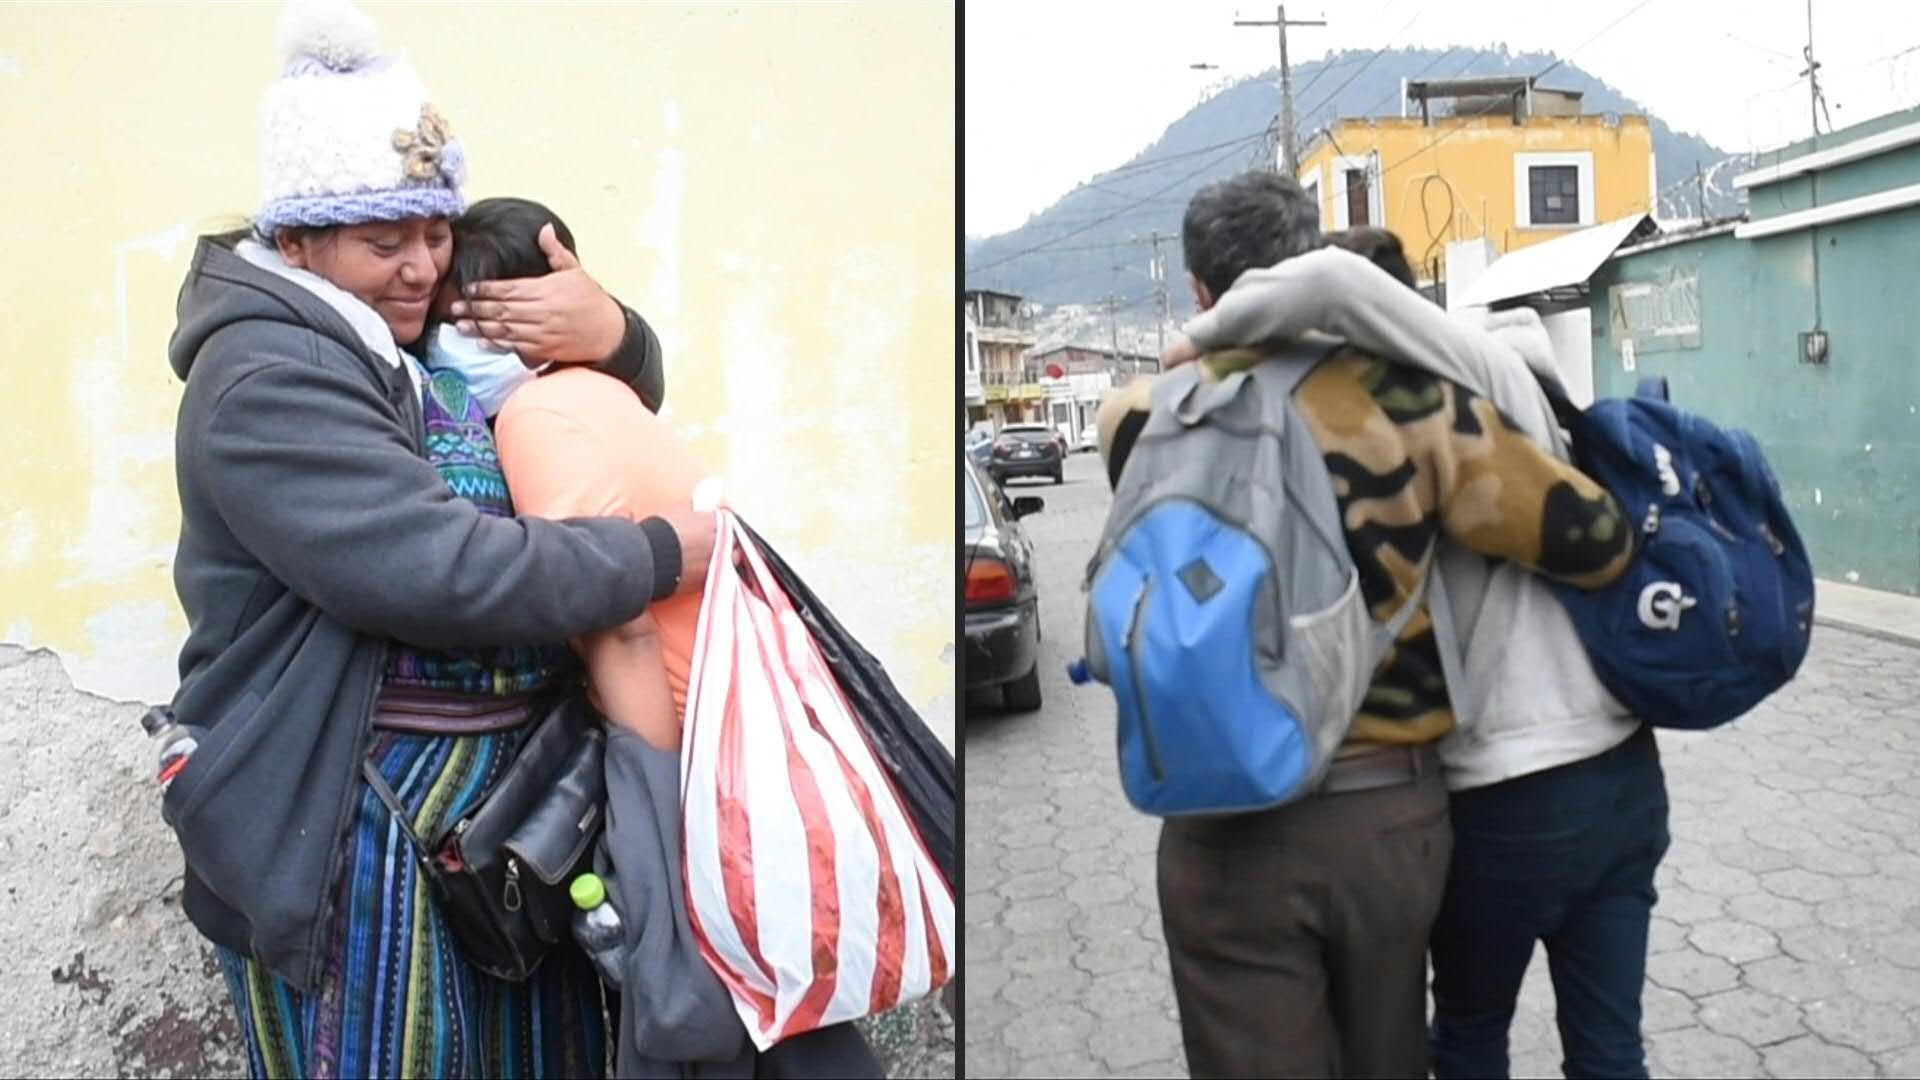 Decenas de niños y adolescentes se funden en largos abrazos con sus padres en un albergue de Quetzaltenango. Su peligroso viaje a solas hacia Estados Unidos como migrantes acaba de terminar en fracaso tras su deportación desde México a Guatemala.